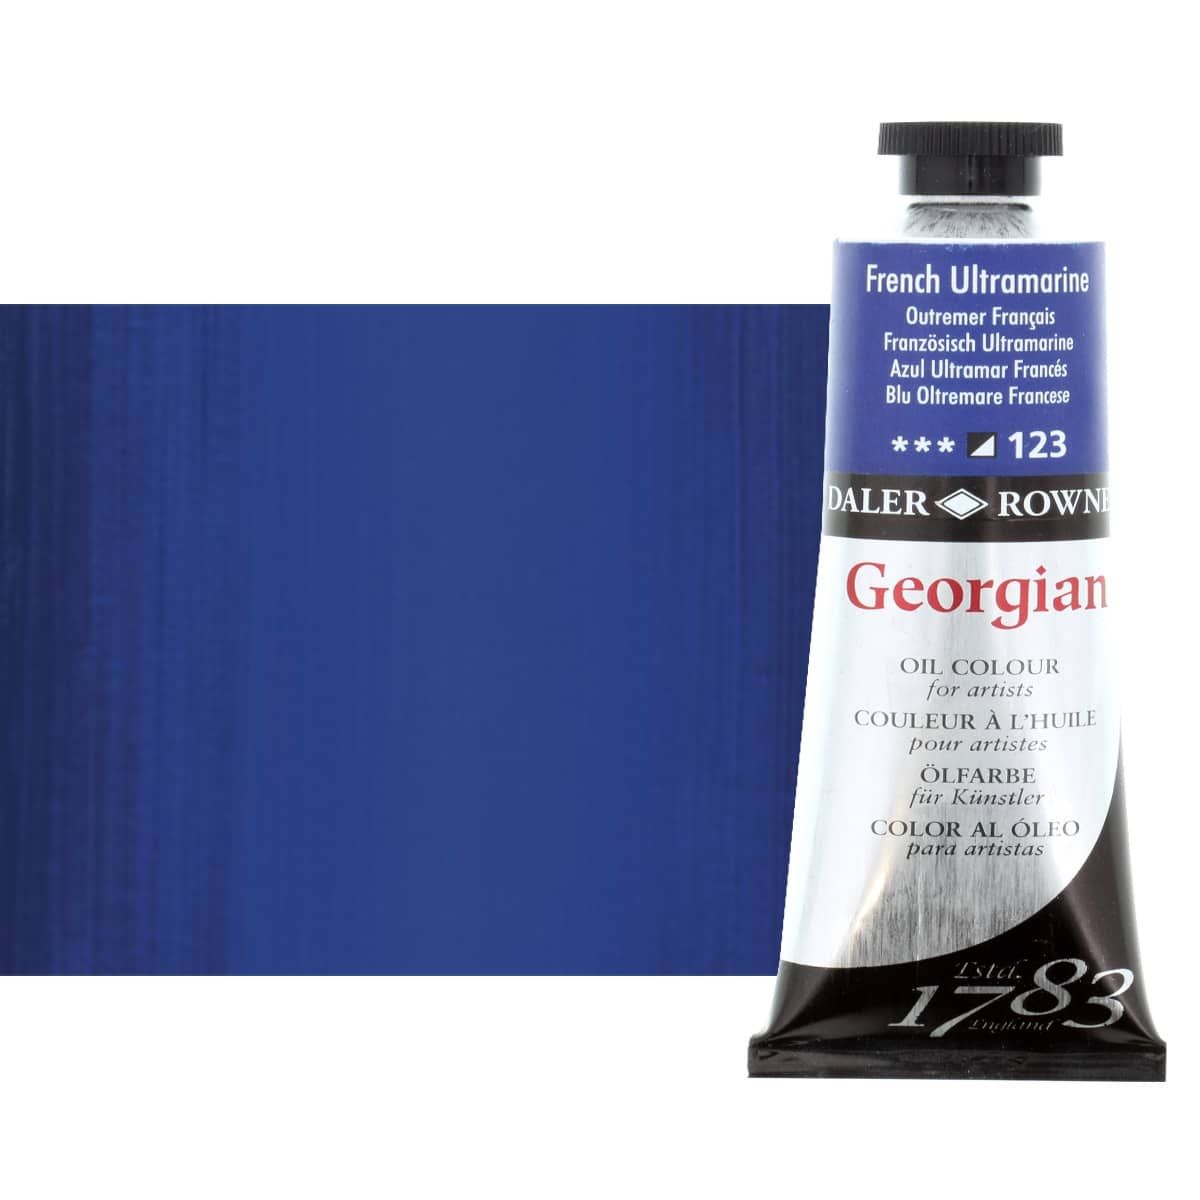 Daler-Rowney Georgian Oil Color 75ml Tube - French Ultramarine Blue